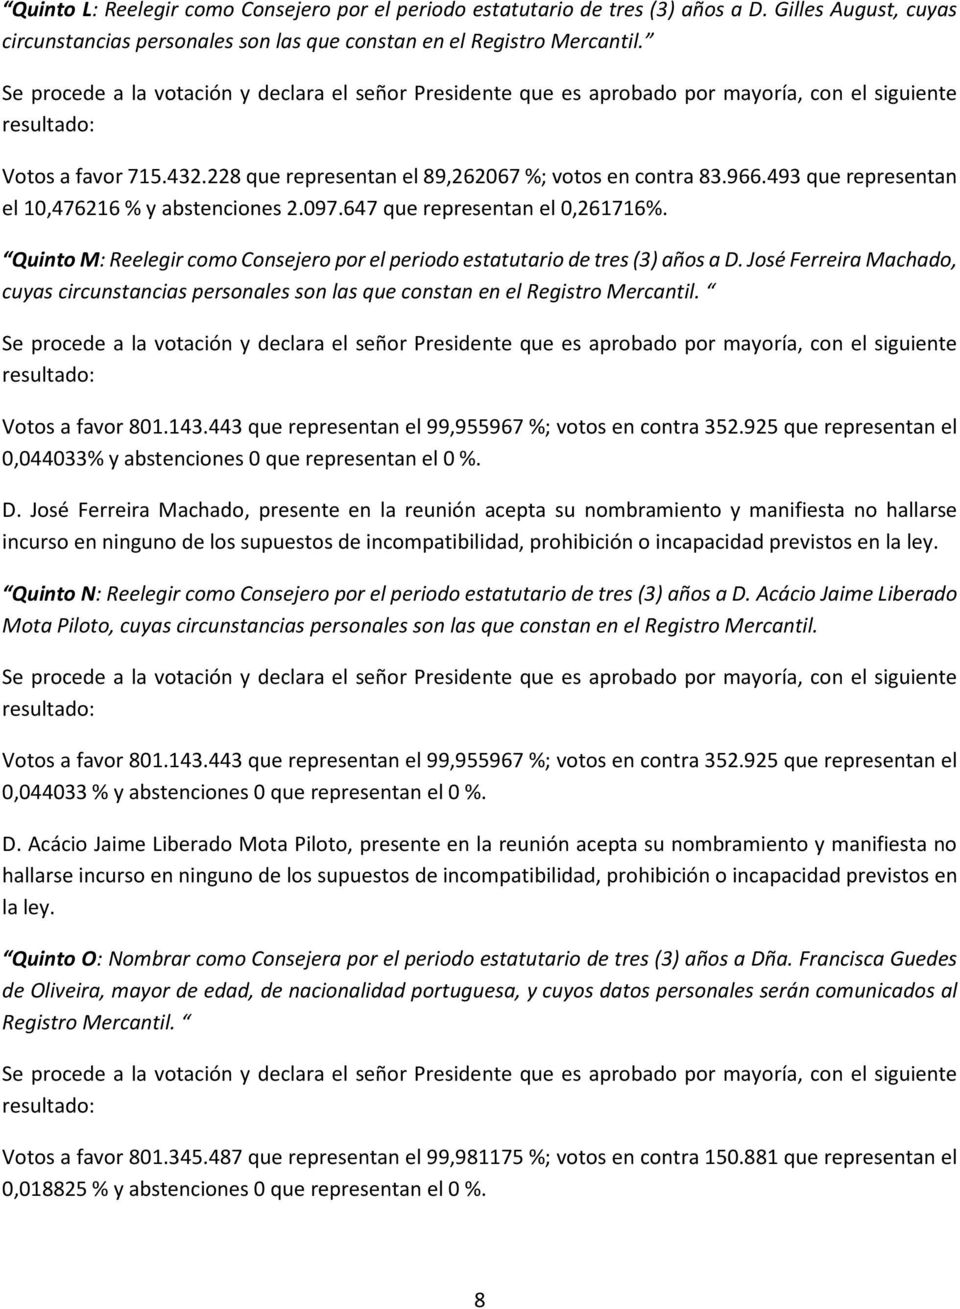 Quinto M: Reelegir como Consejero por el periodo estatutario de tres (3) años a D. José Ferreira Machado, cuyas circunstancias personales son las que constan en el Registro Mercantil.